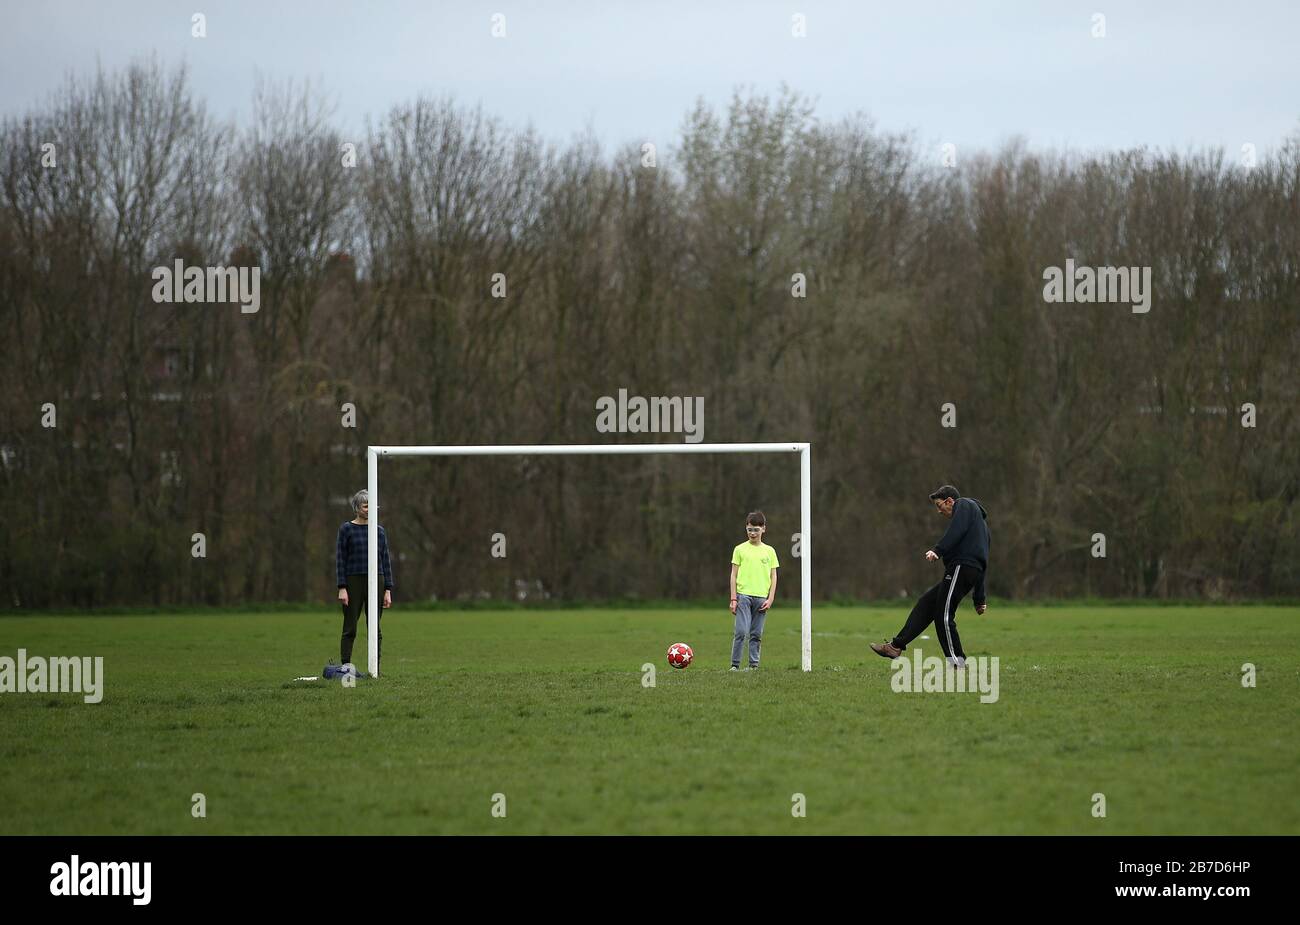 Les gens jouent au football sur Hackney Marshes à Londres après l'annonce de vendredi selon laquelle la Premier League a suspendu tous les matchs jusqu'au samedi 4 avril 2020. Banque D'Images